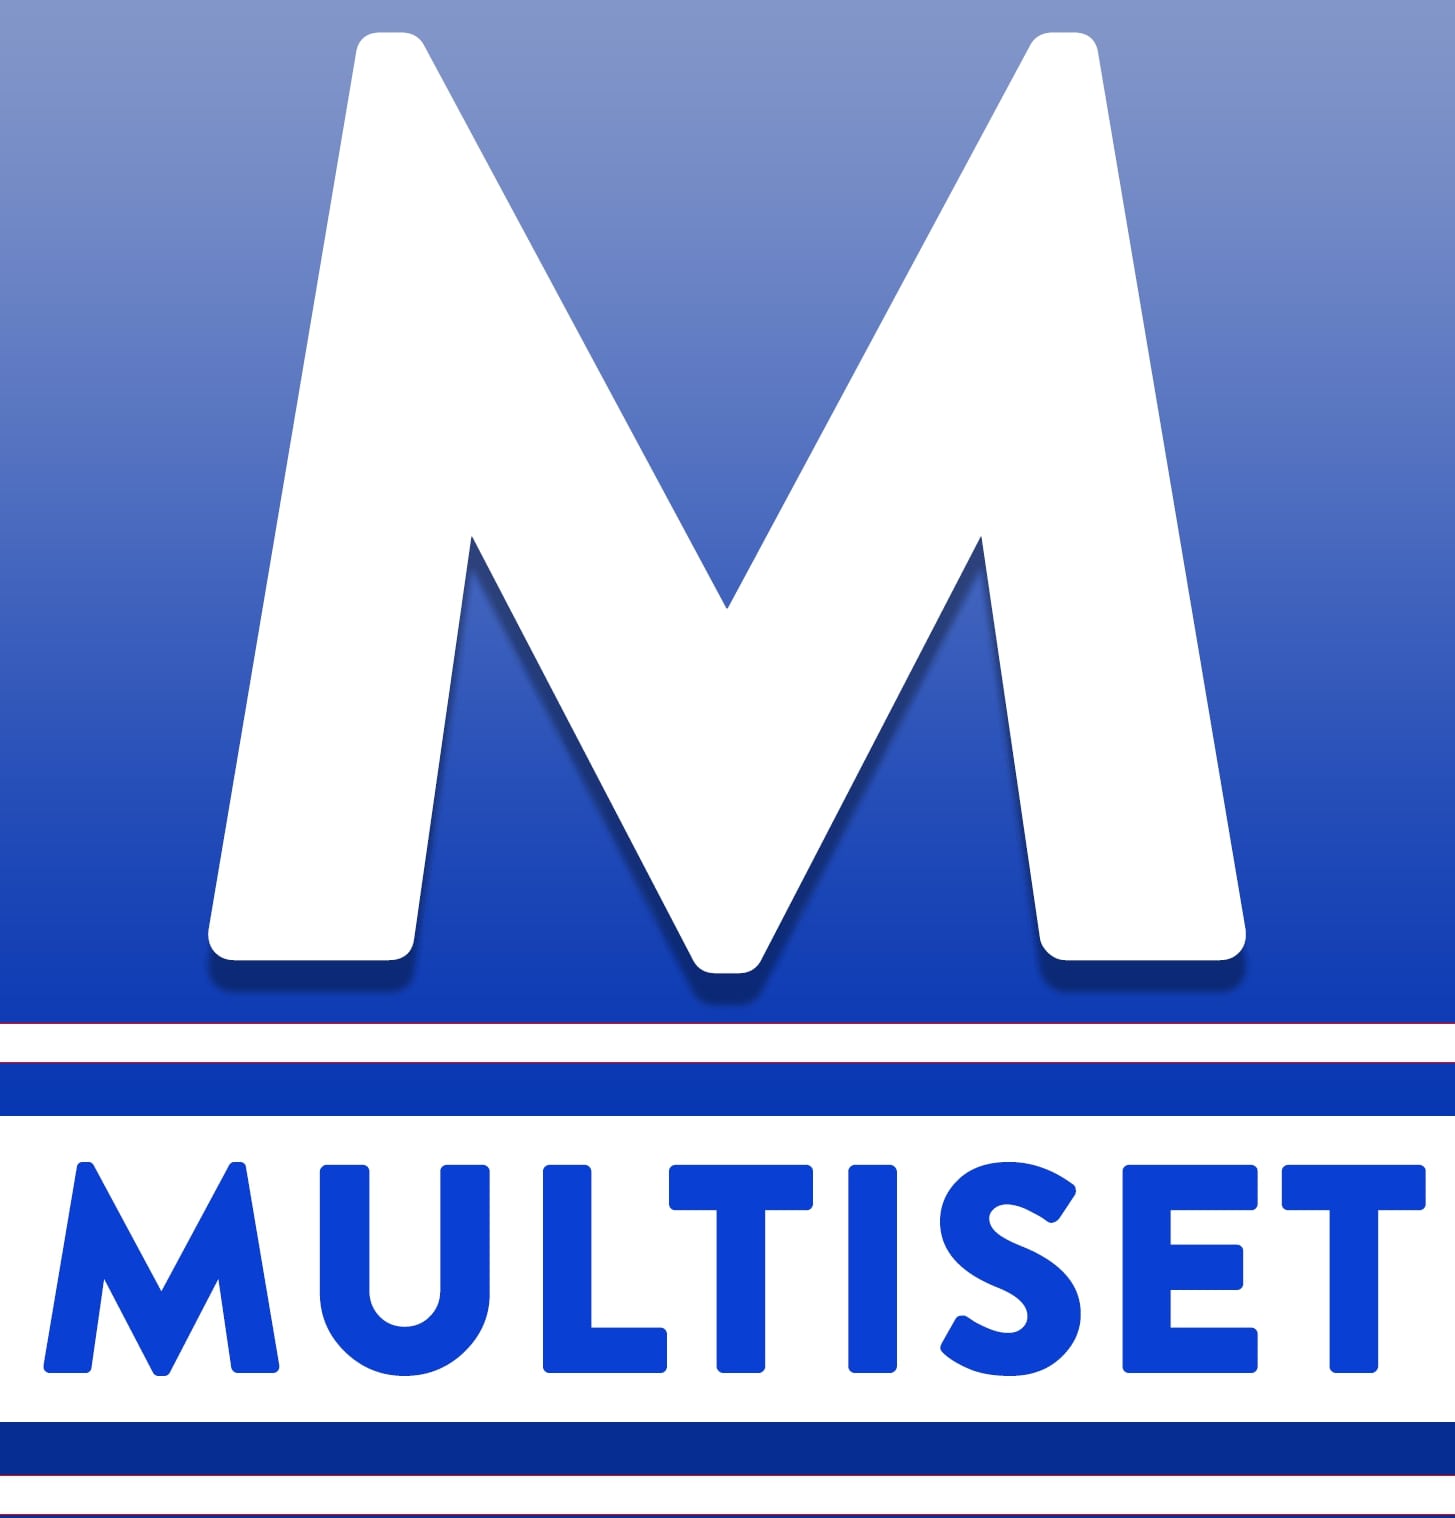 Multiset